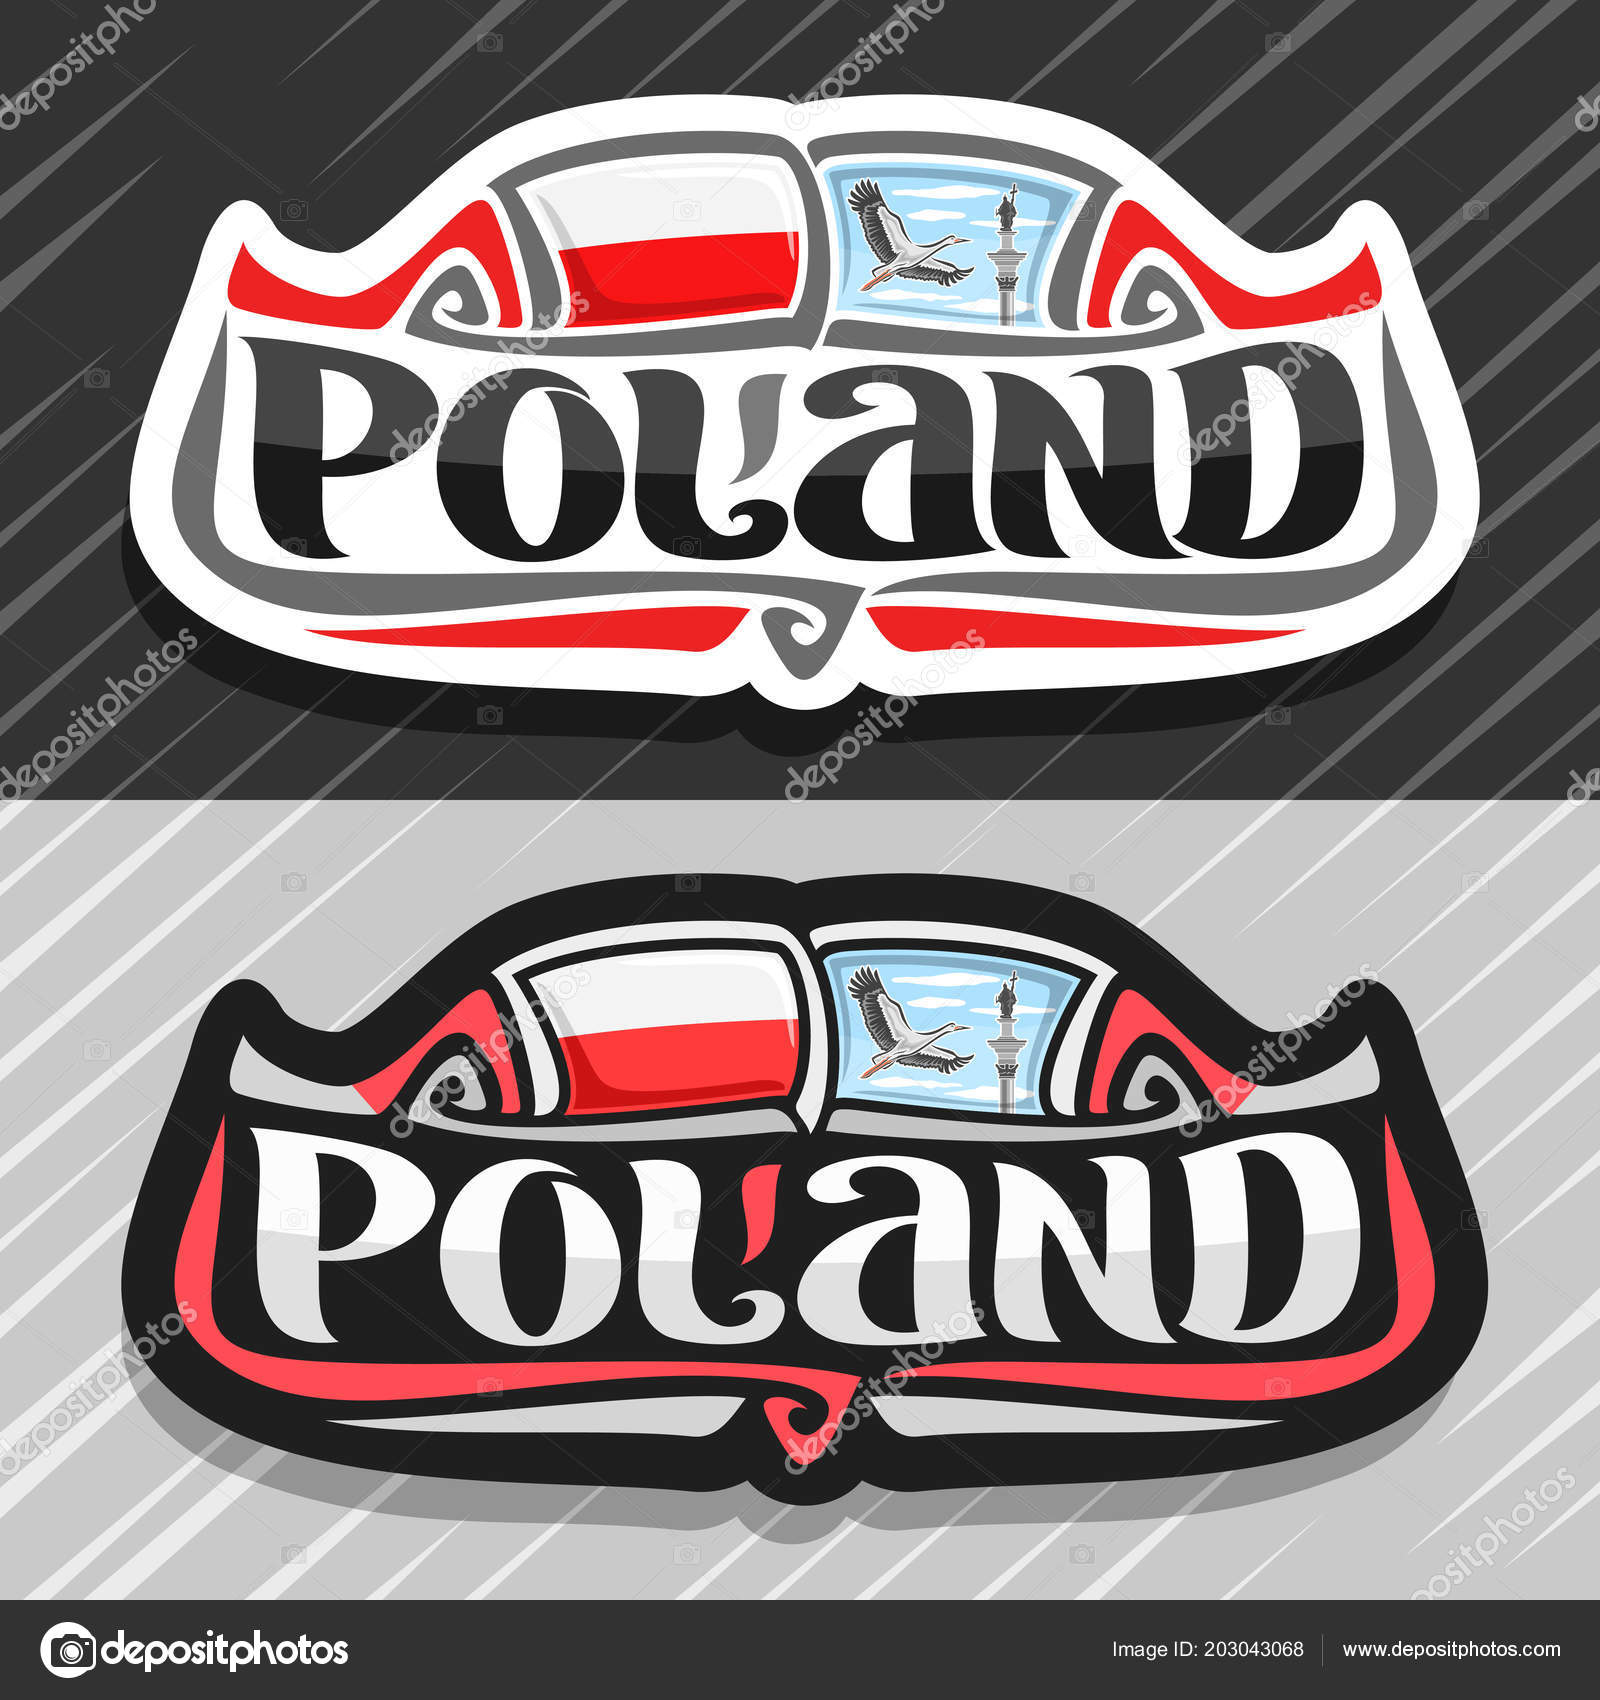 Flag of Poland FRIDGE MAGNET 